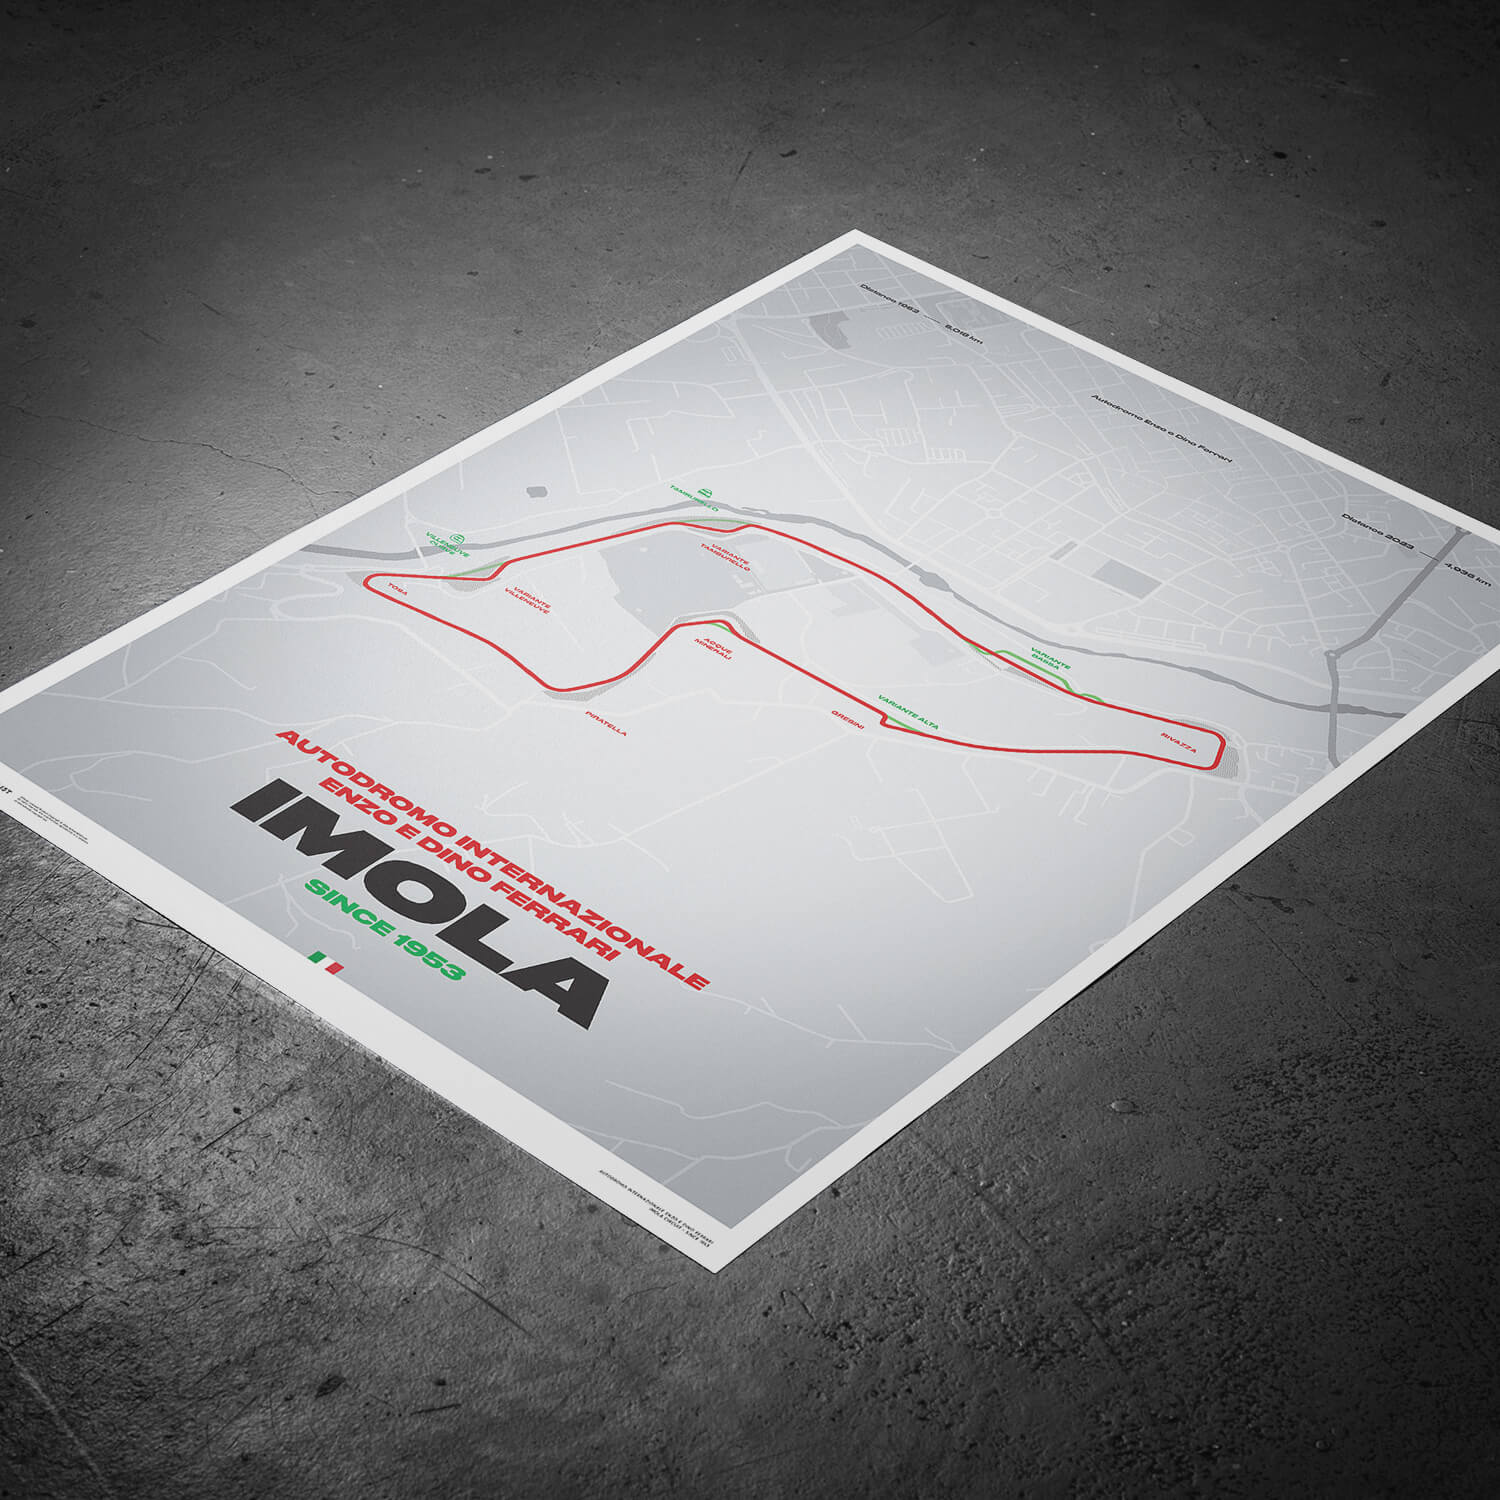 Circuit d'Imola – Track Evolution – Autodromo Internazionale Enzo e Dino Ferrari